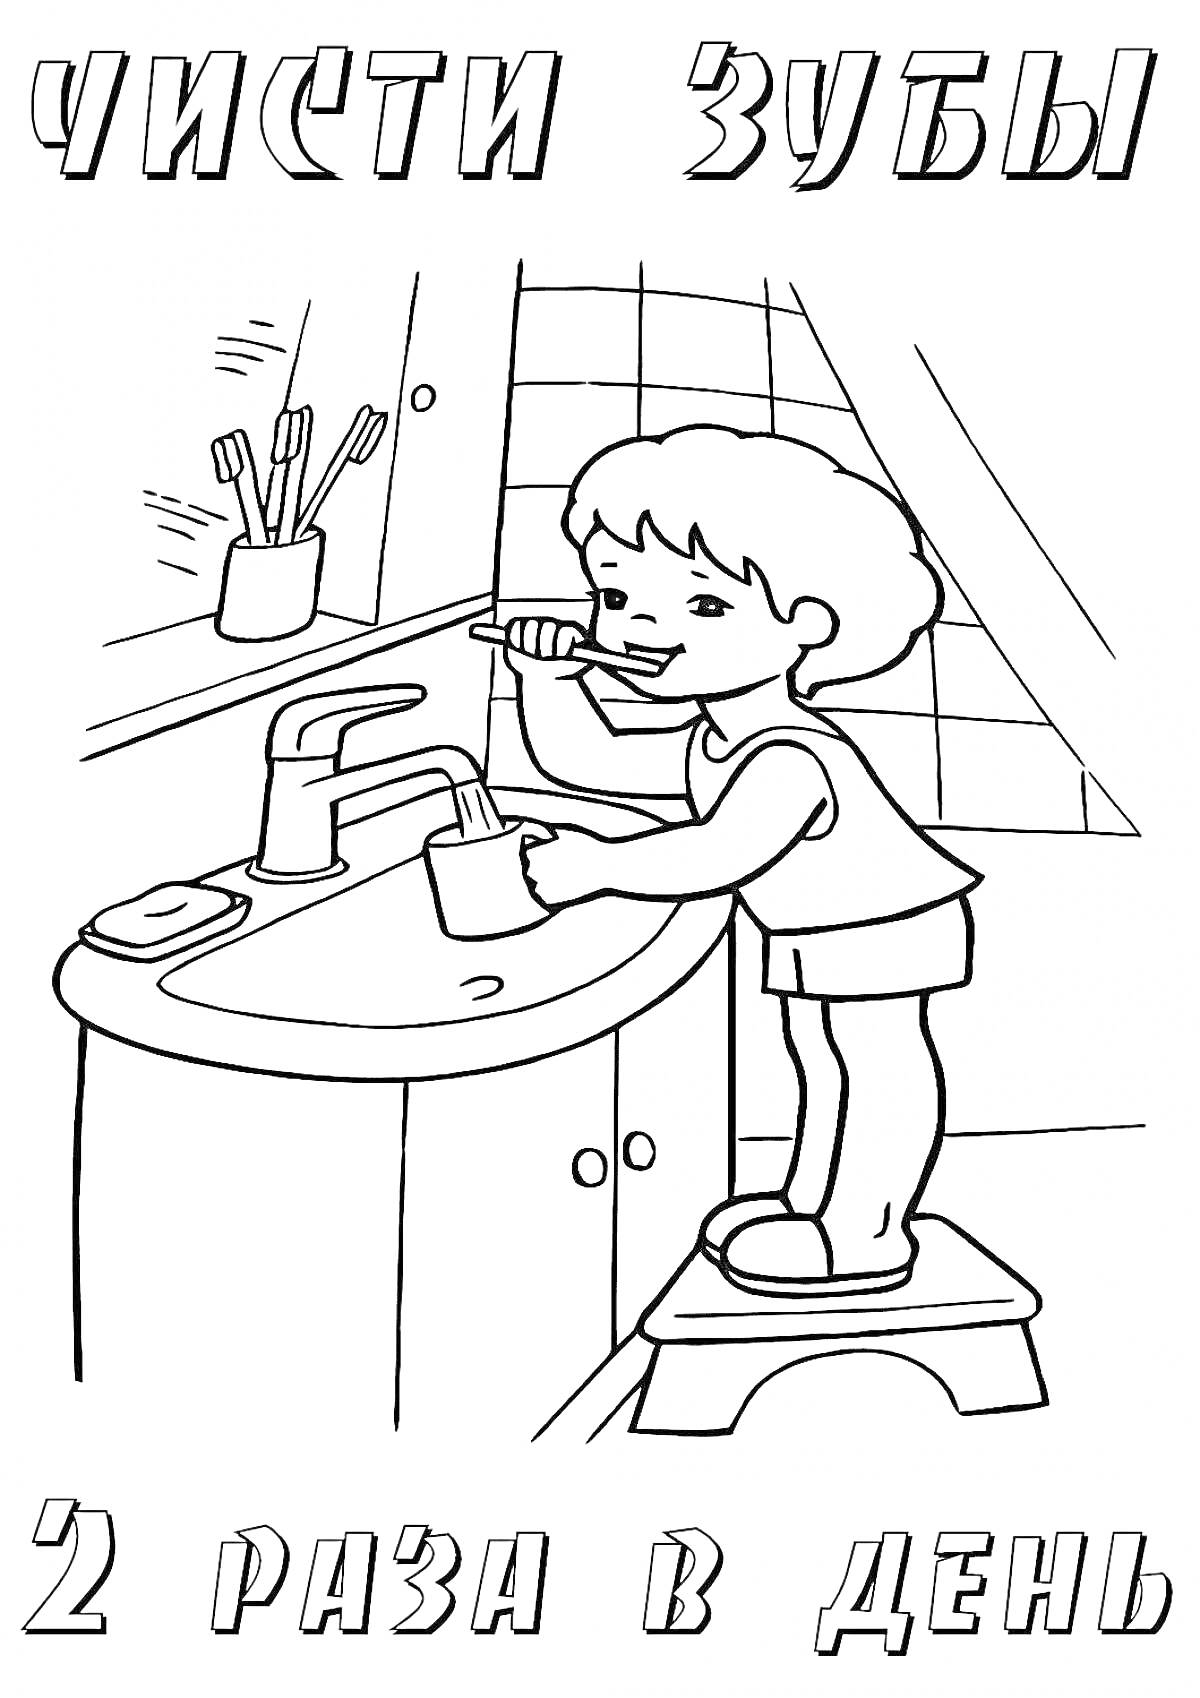 Раскраска Мальчик чистит зубы в ванной комнате, стоя на табуретке; рядом раковина с краном, стакан с зубными щетками и мыльница; на заднем плане плитка.